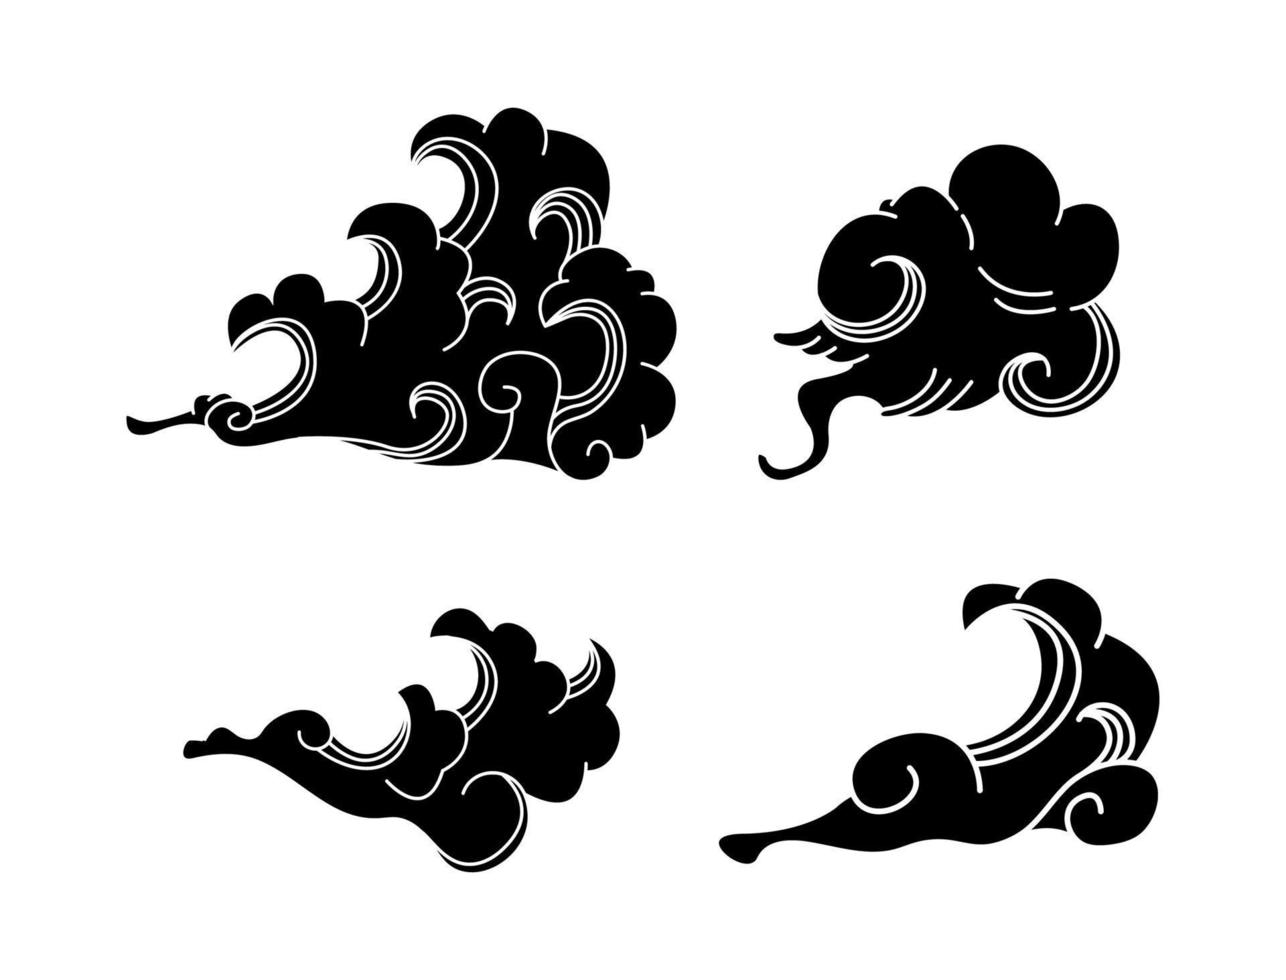 Reihe von schwarzen Rauchwolken und Wellen vektor